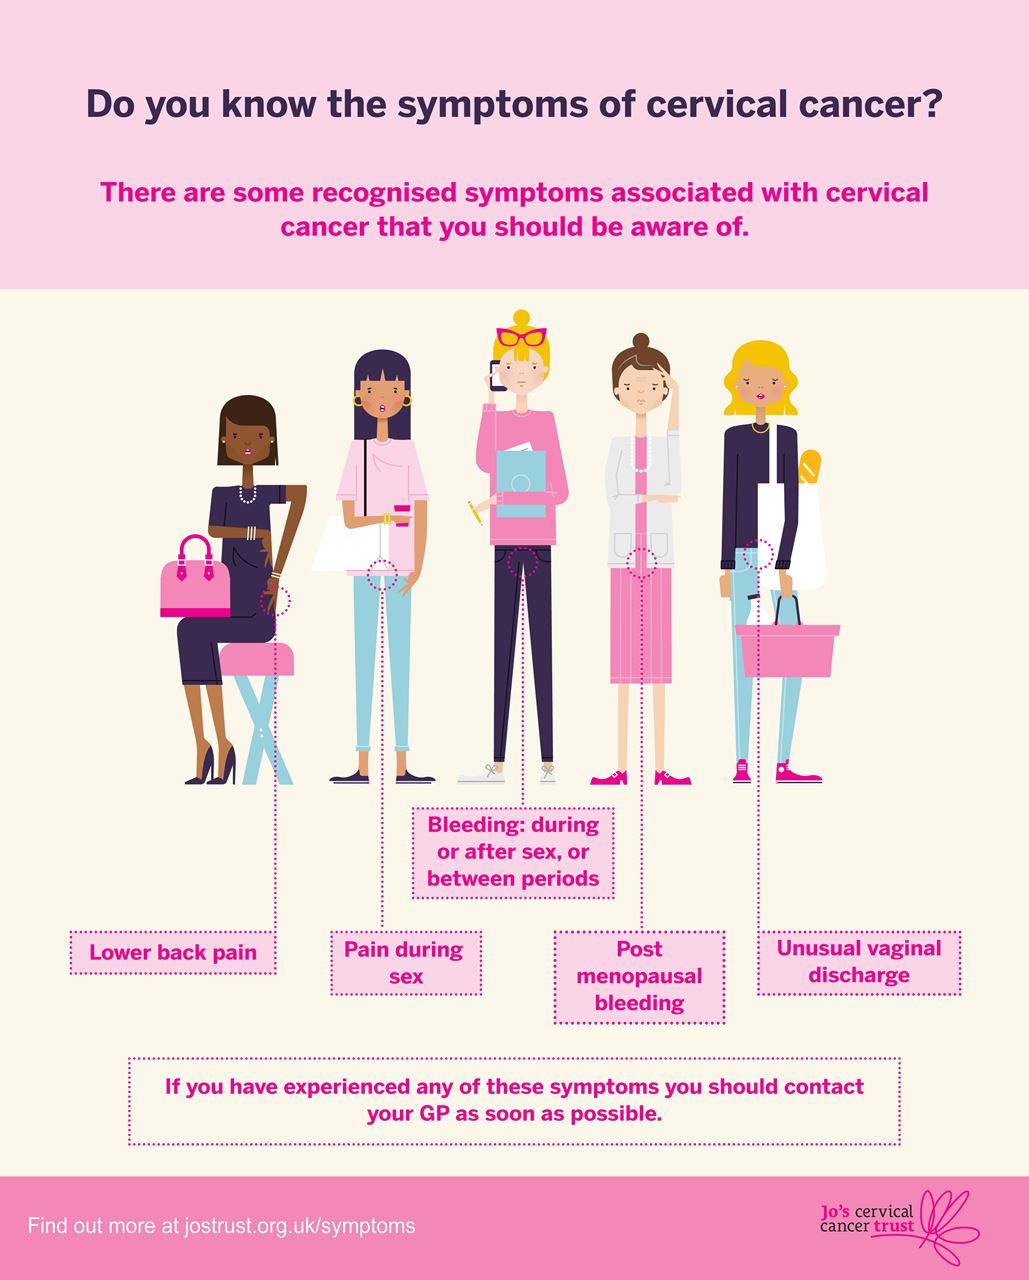 Symptoms of Cervical Cancer